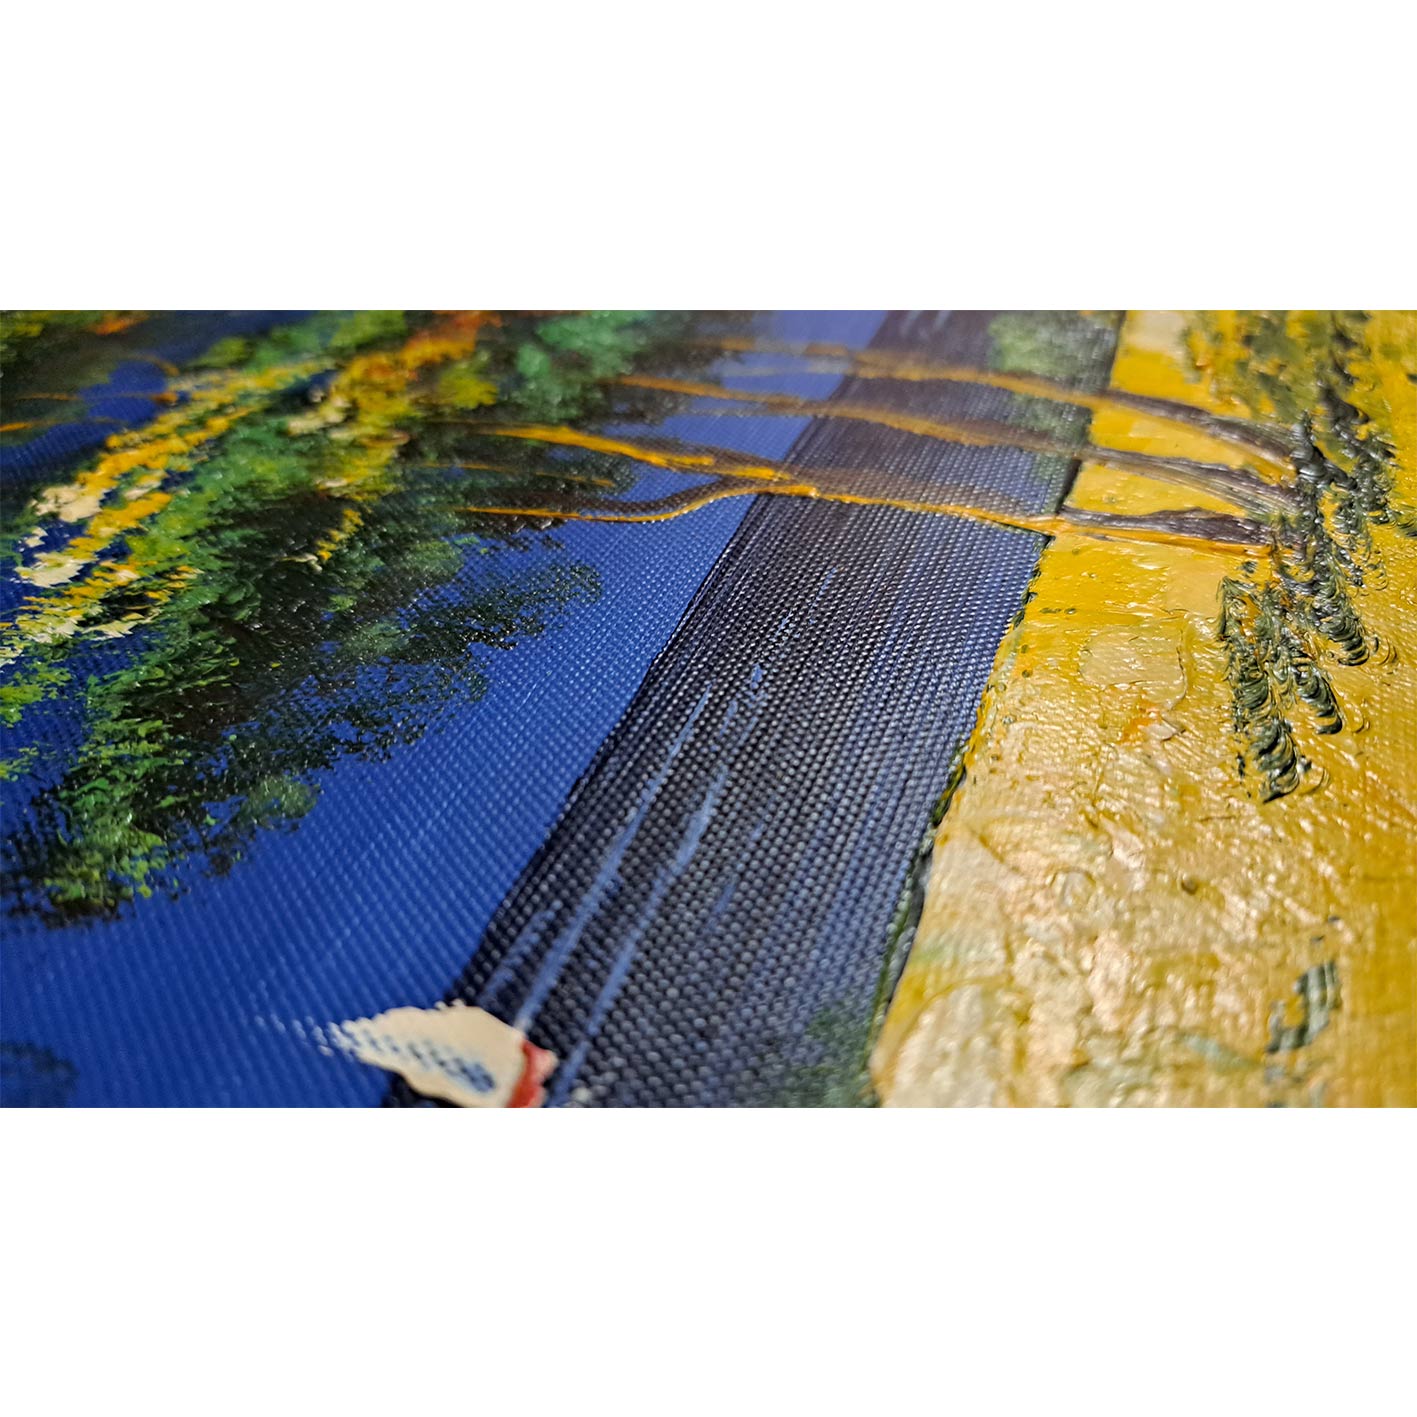 Landschafts-Diptychon-Gemälde 50X60 cm [2 Stück]